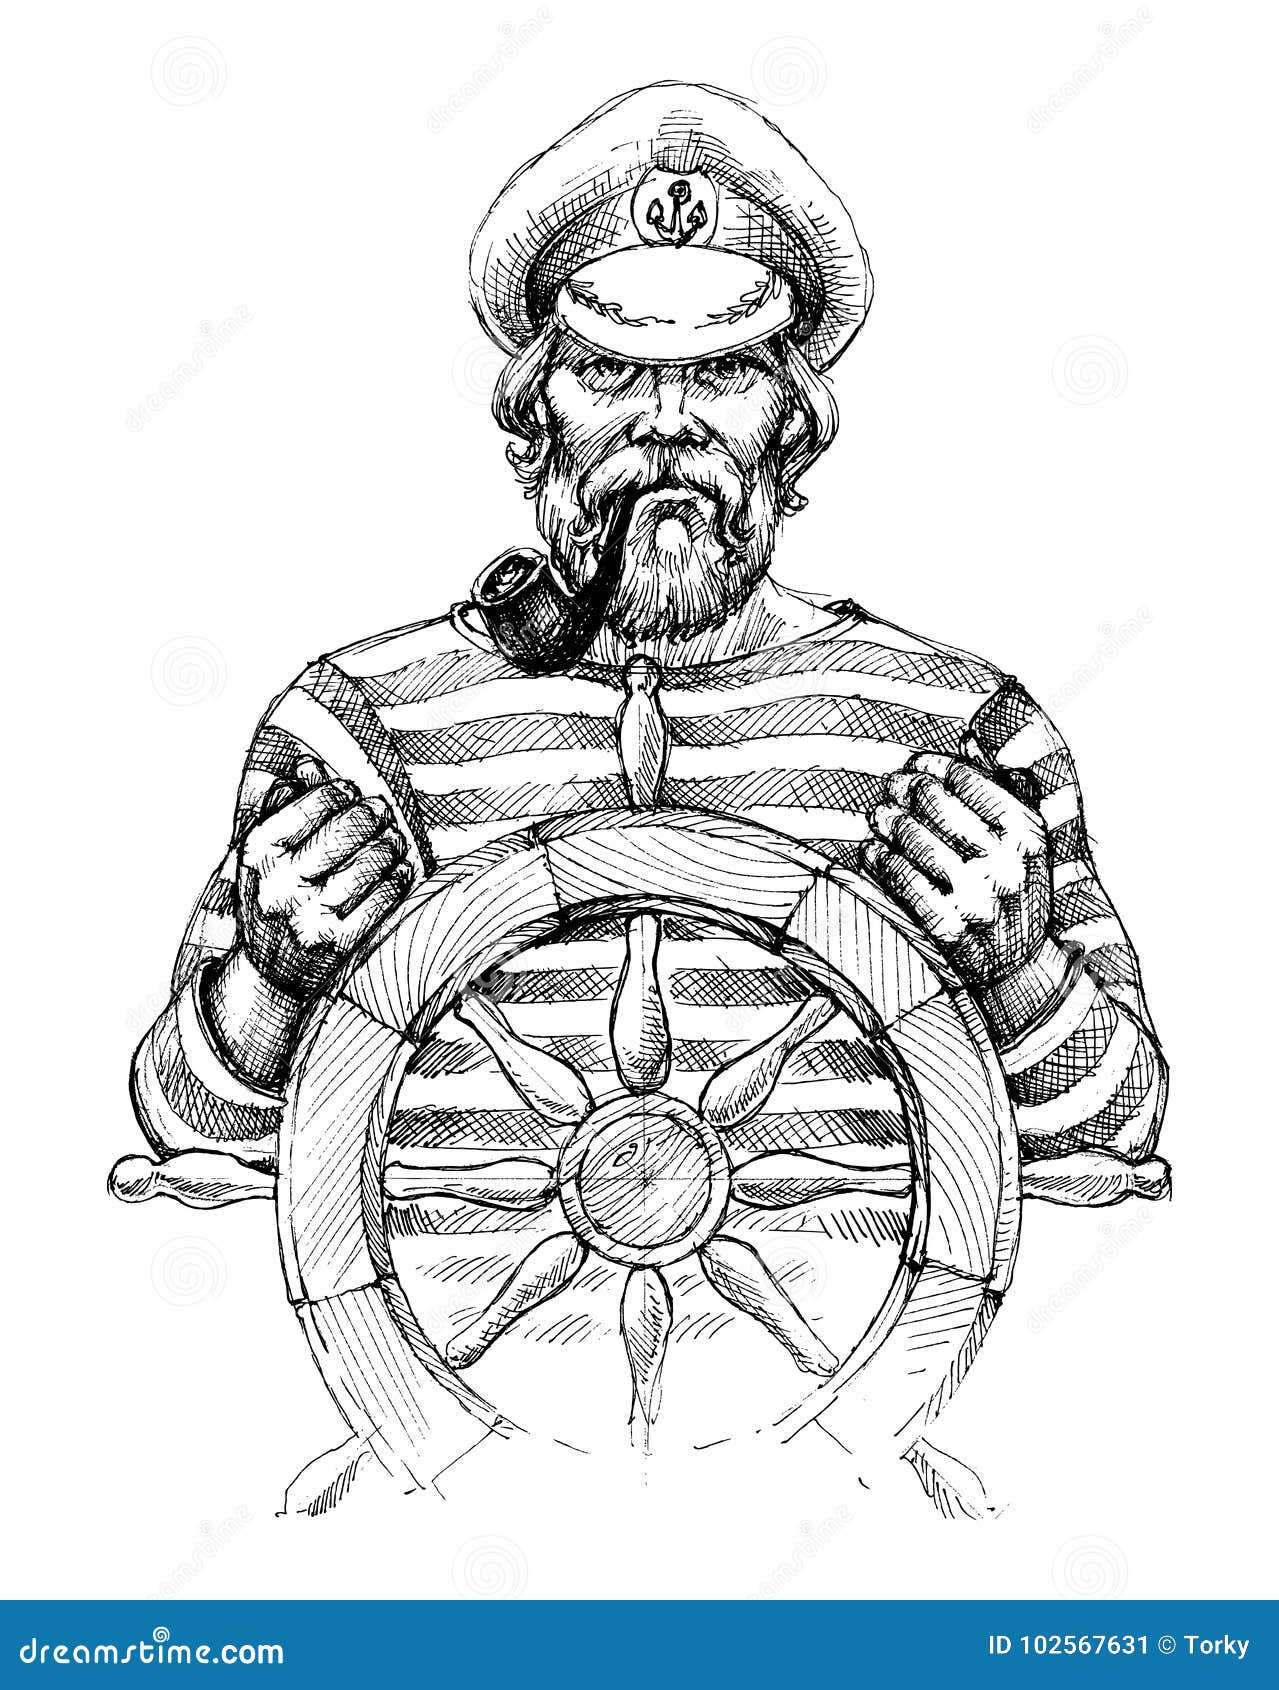 sailor at helm portrait